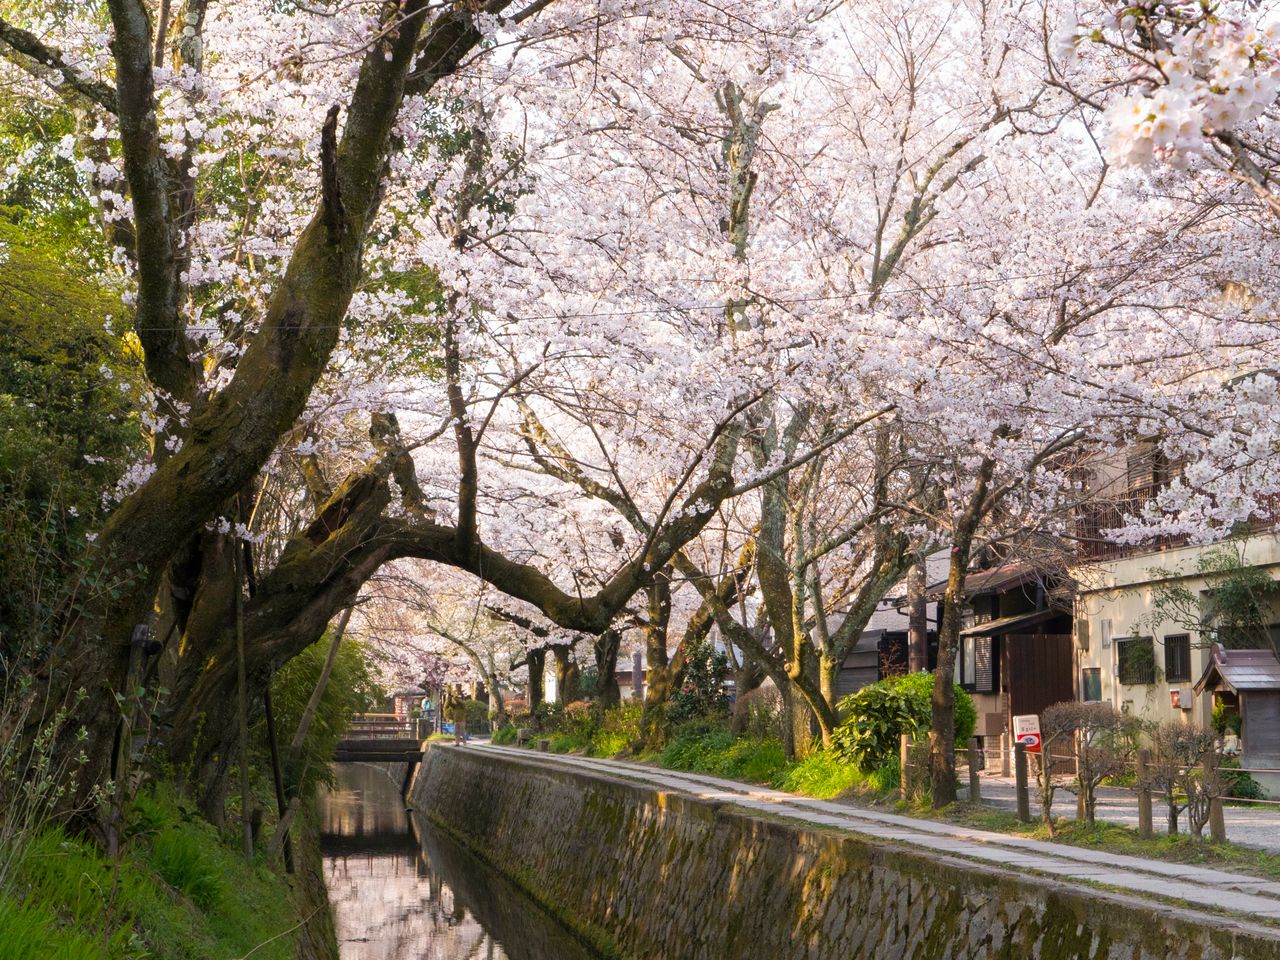 Каменные мостики дополняют живописный вид на канал и цветущую сакуру